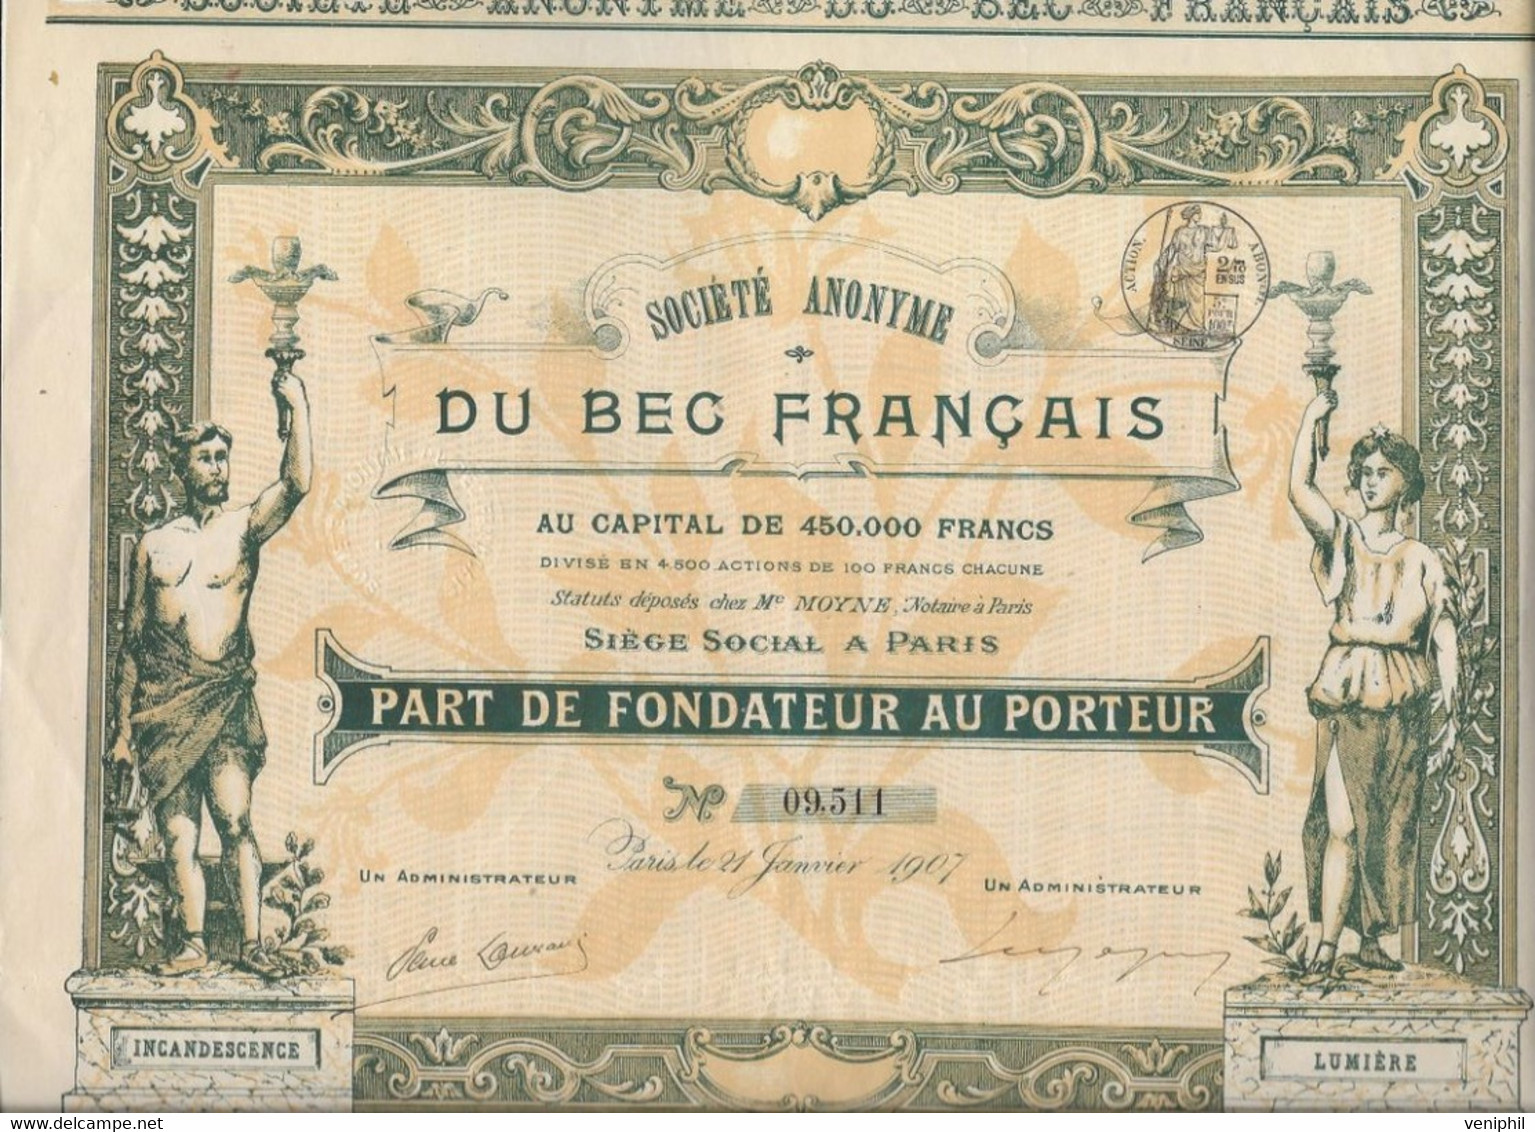 SOCIETE DU BEC FRANCAIS -PART DE FONDATEUR -BELLE ILLUSTRATION - ANNEE 1907 - Elektrizität & Gas